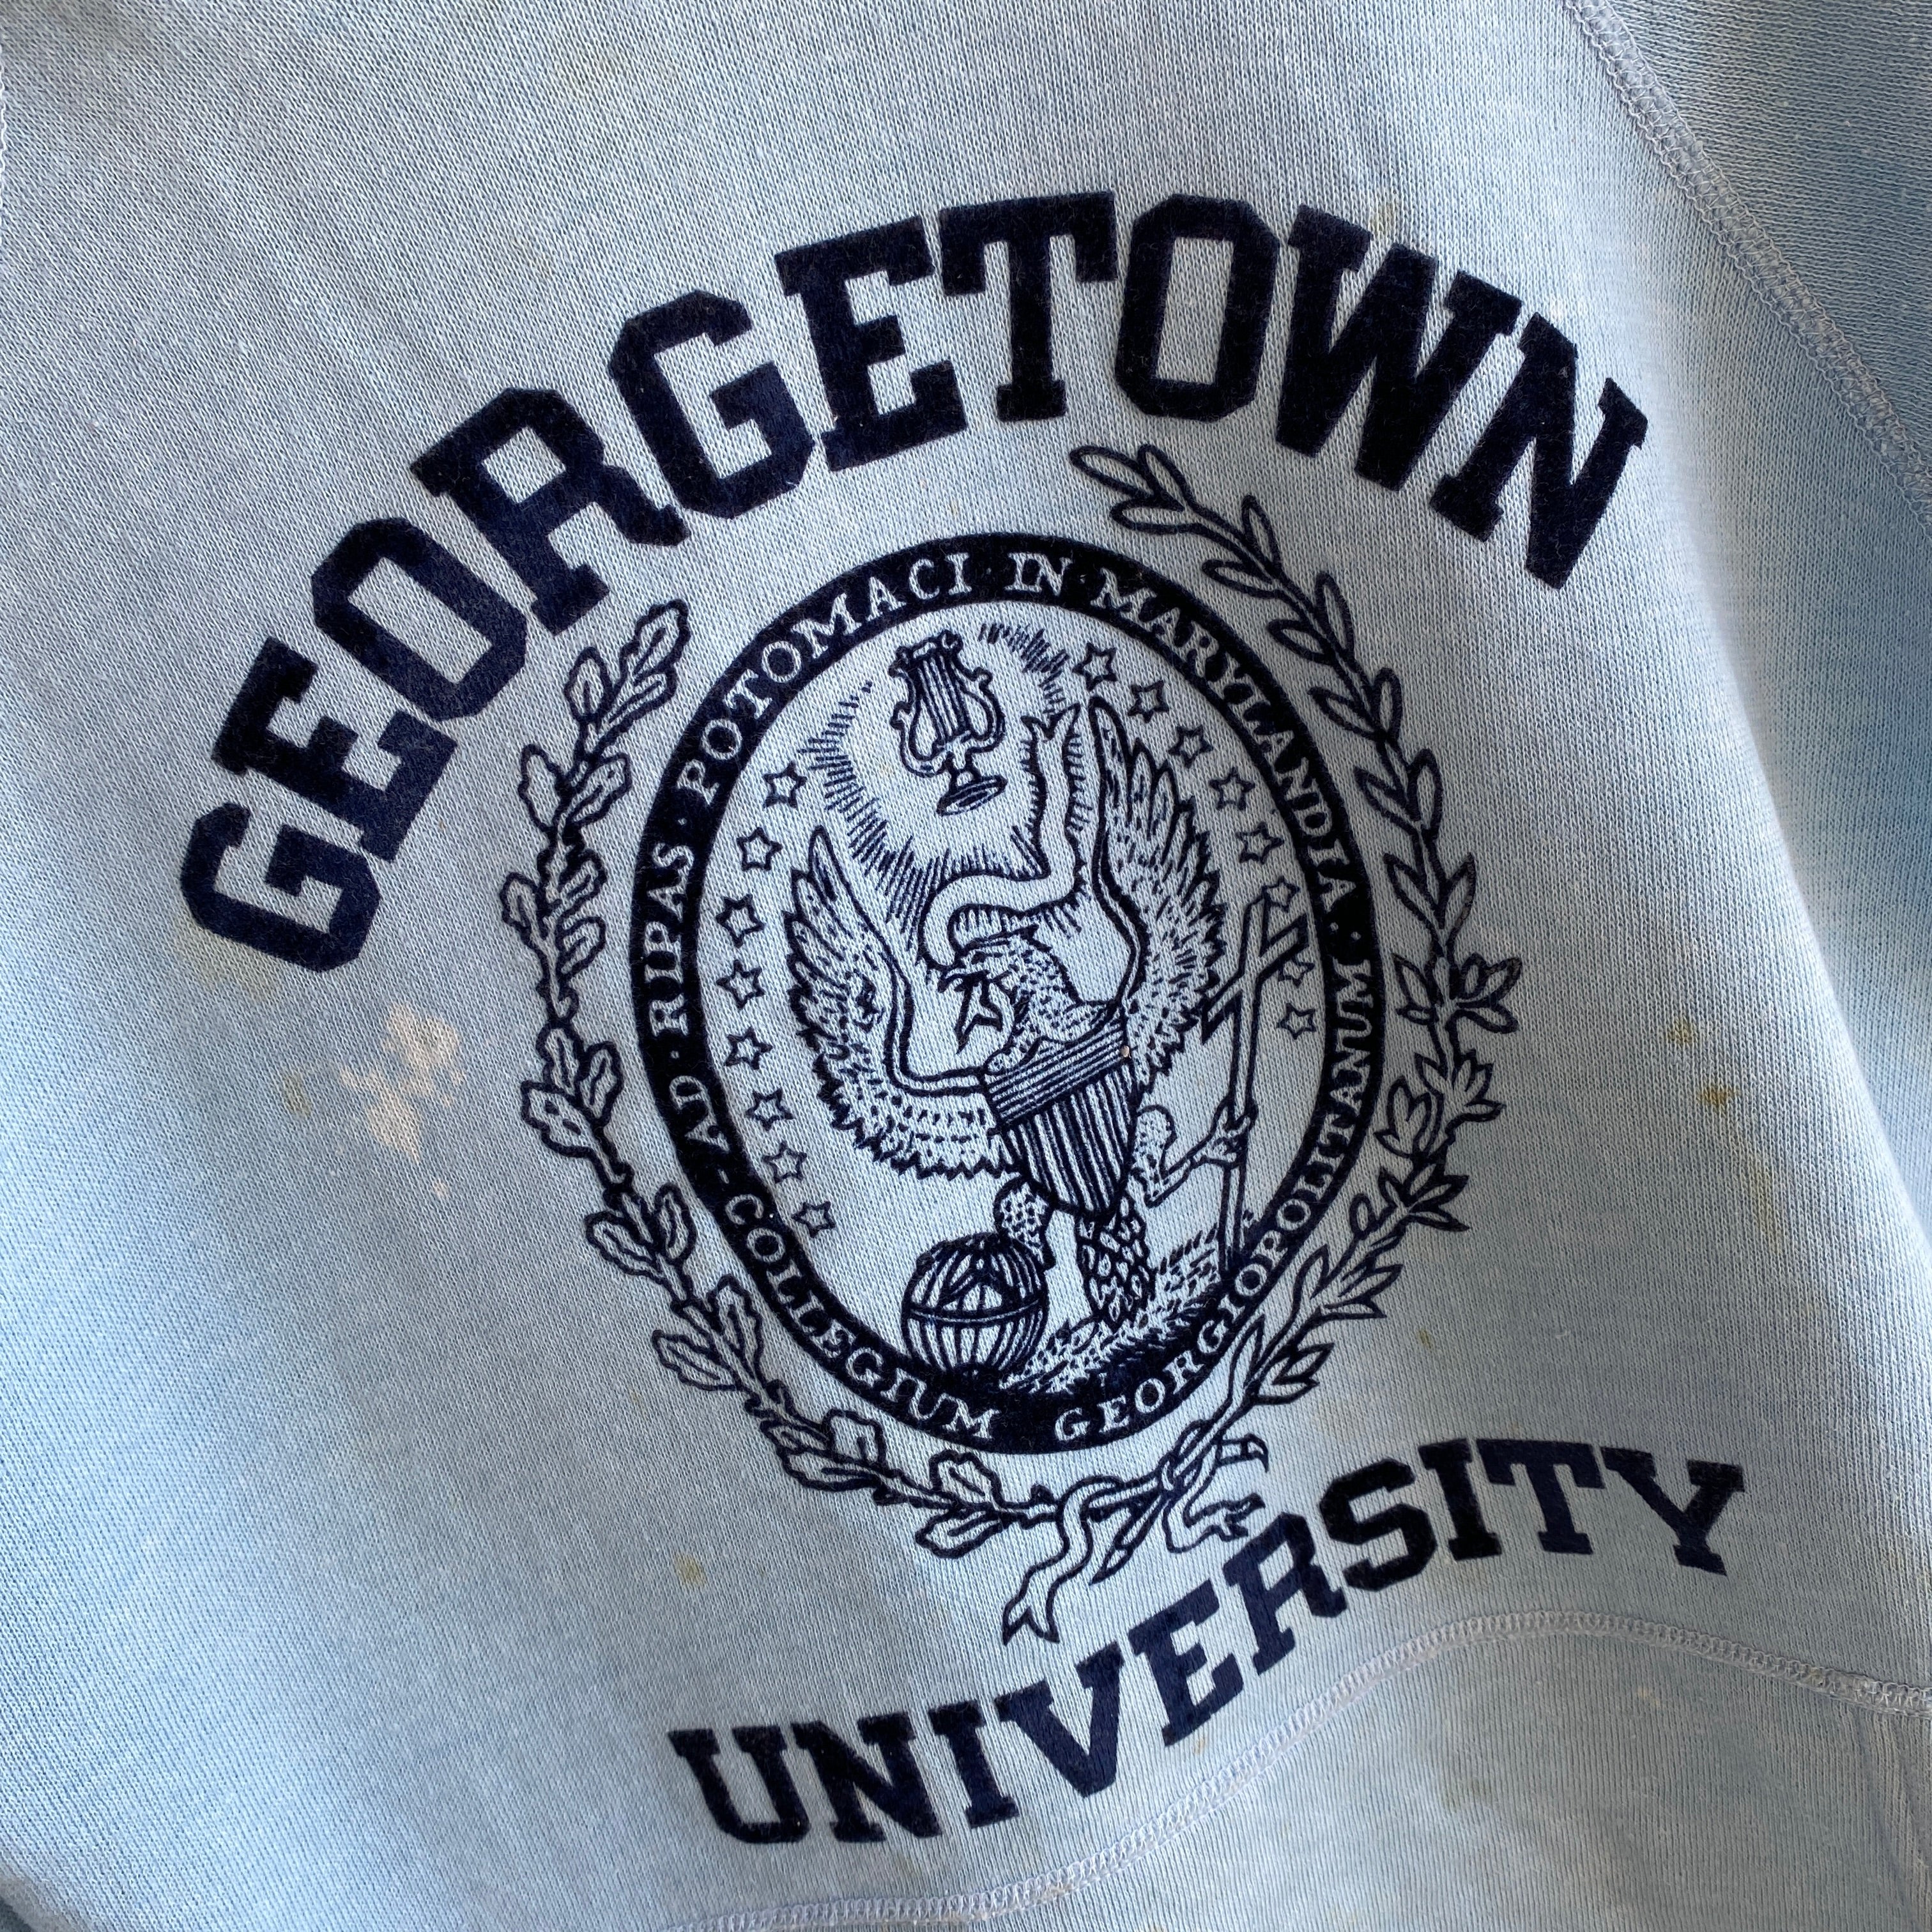 Sweat à capuche Super Stained Georgetown University des années 1970 - EPIC!